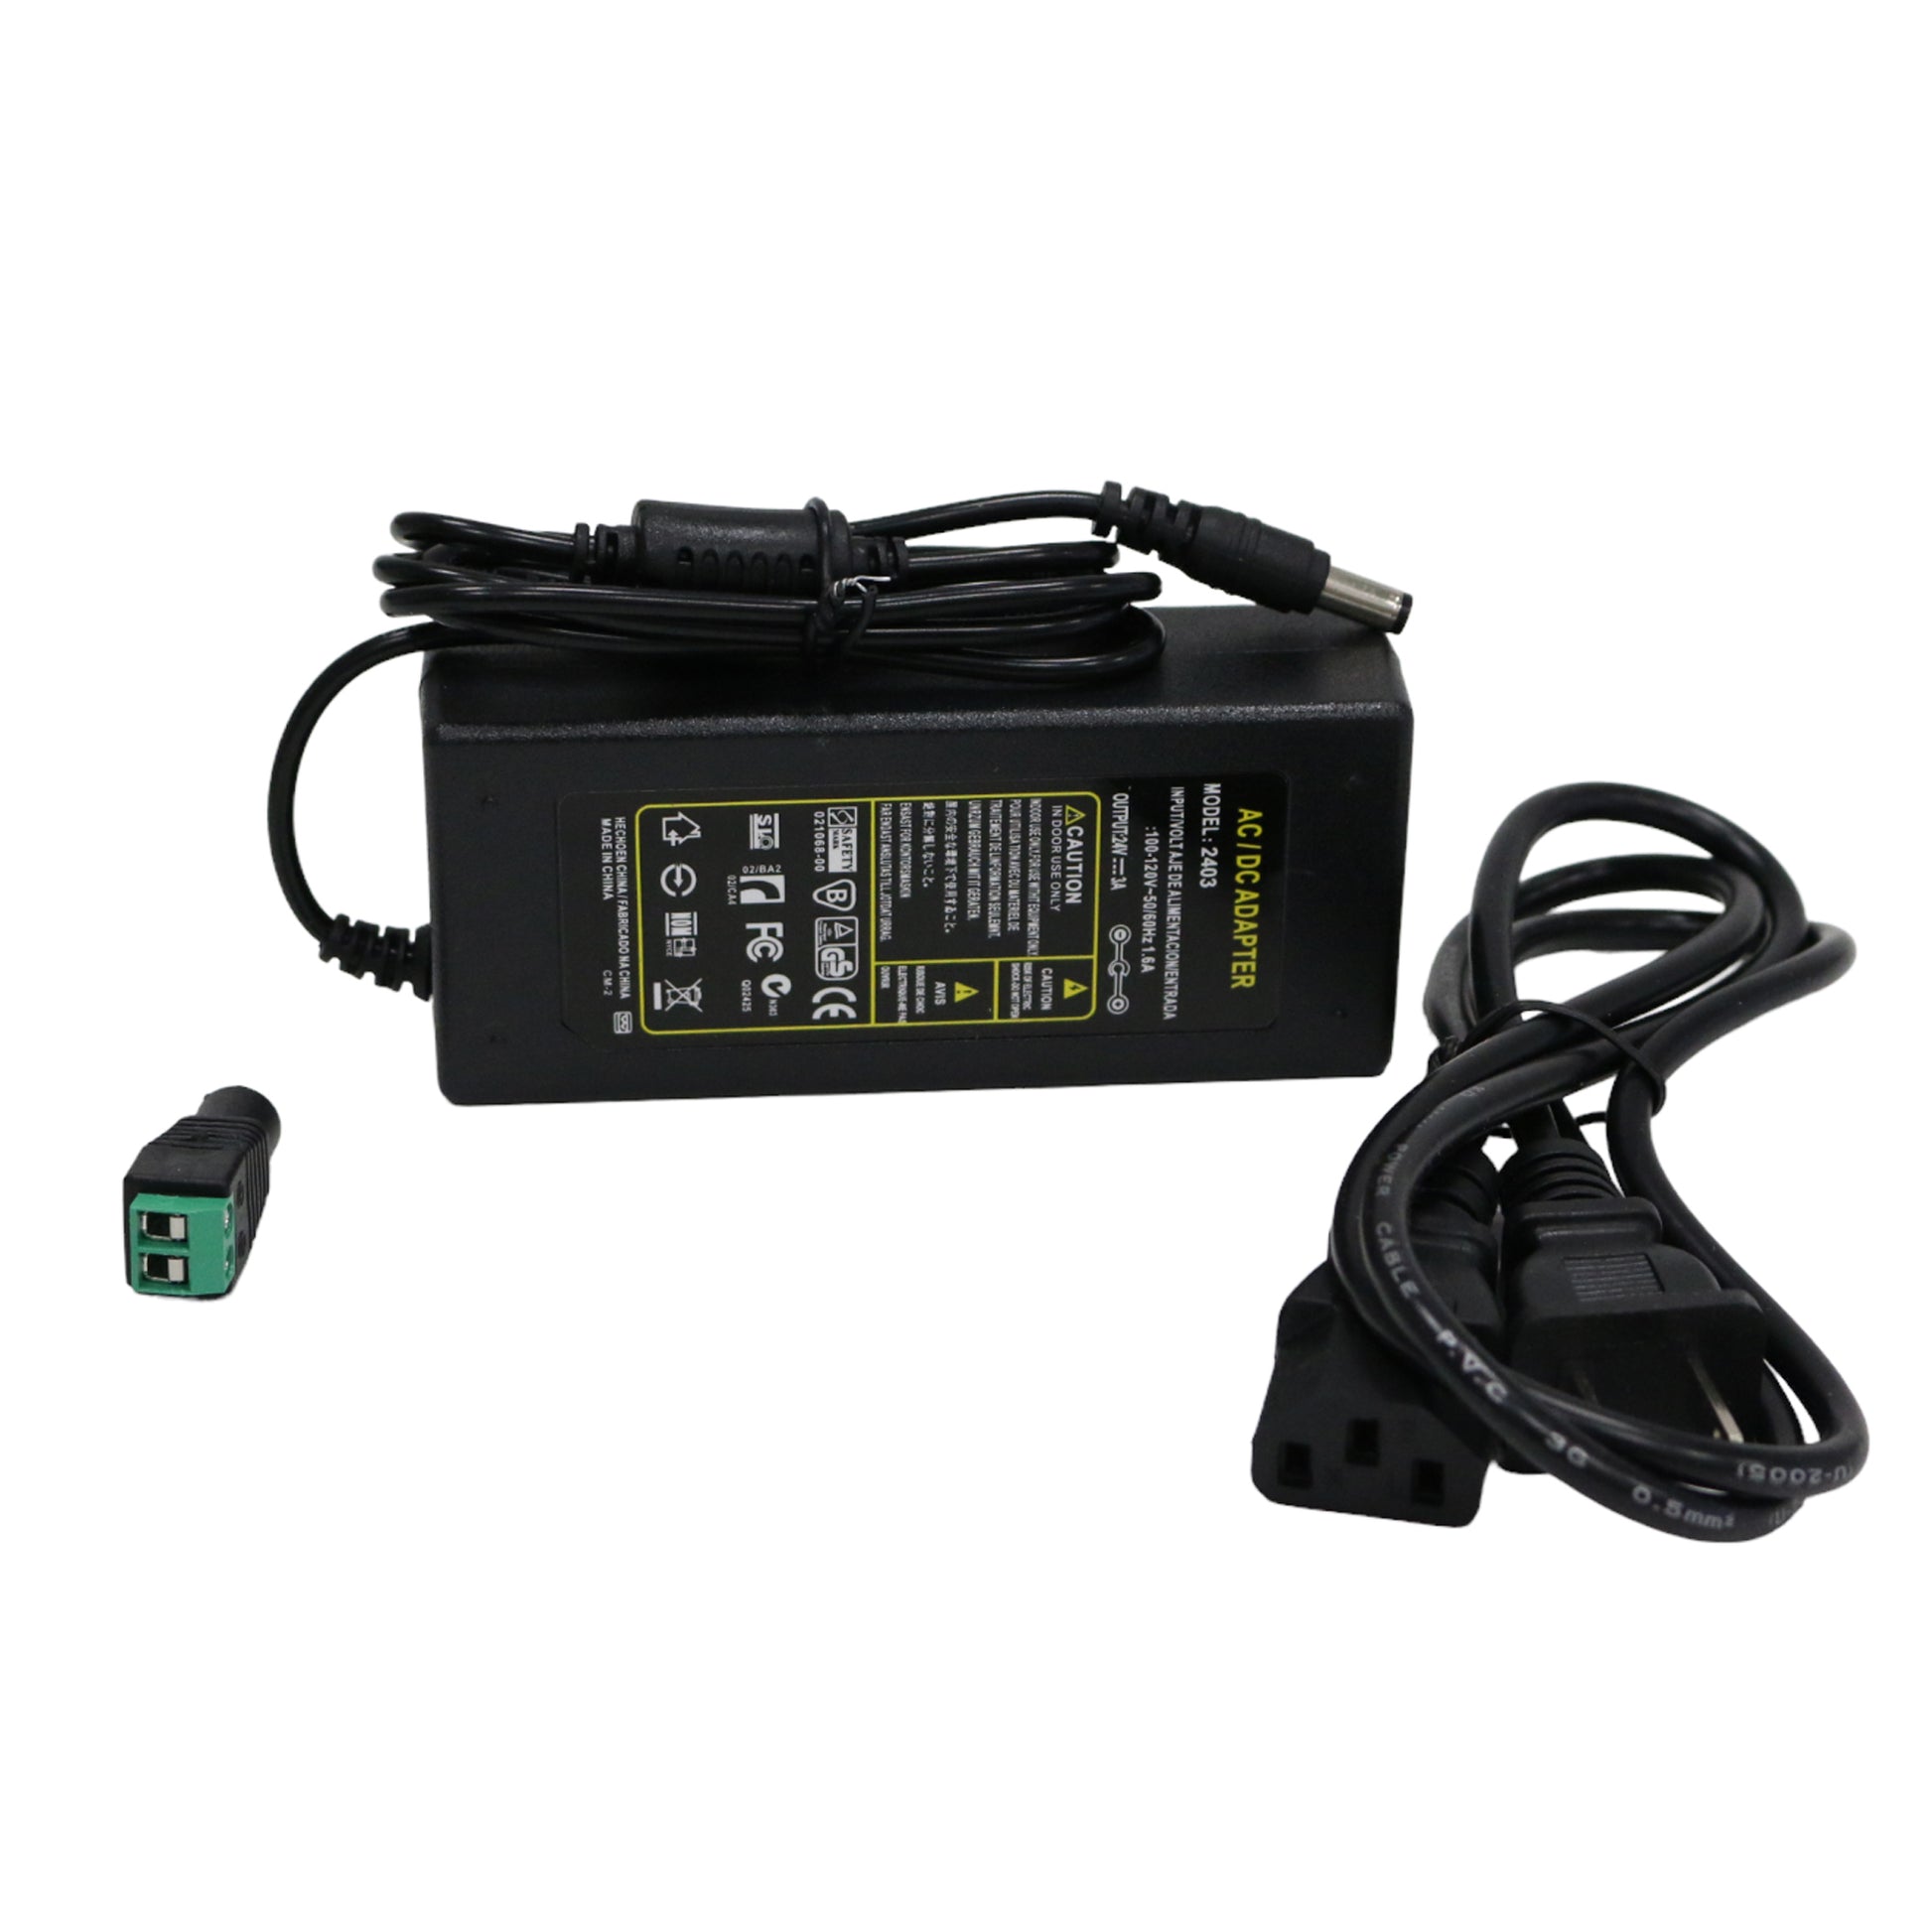 Adaptér Ladegerät 230V / 12Vdc 6W 0,5A ER/EB0612 - Dencop Lighting